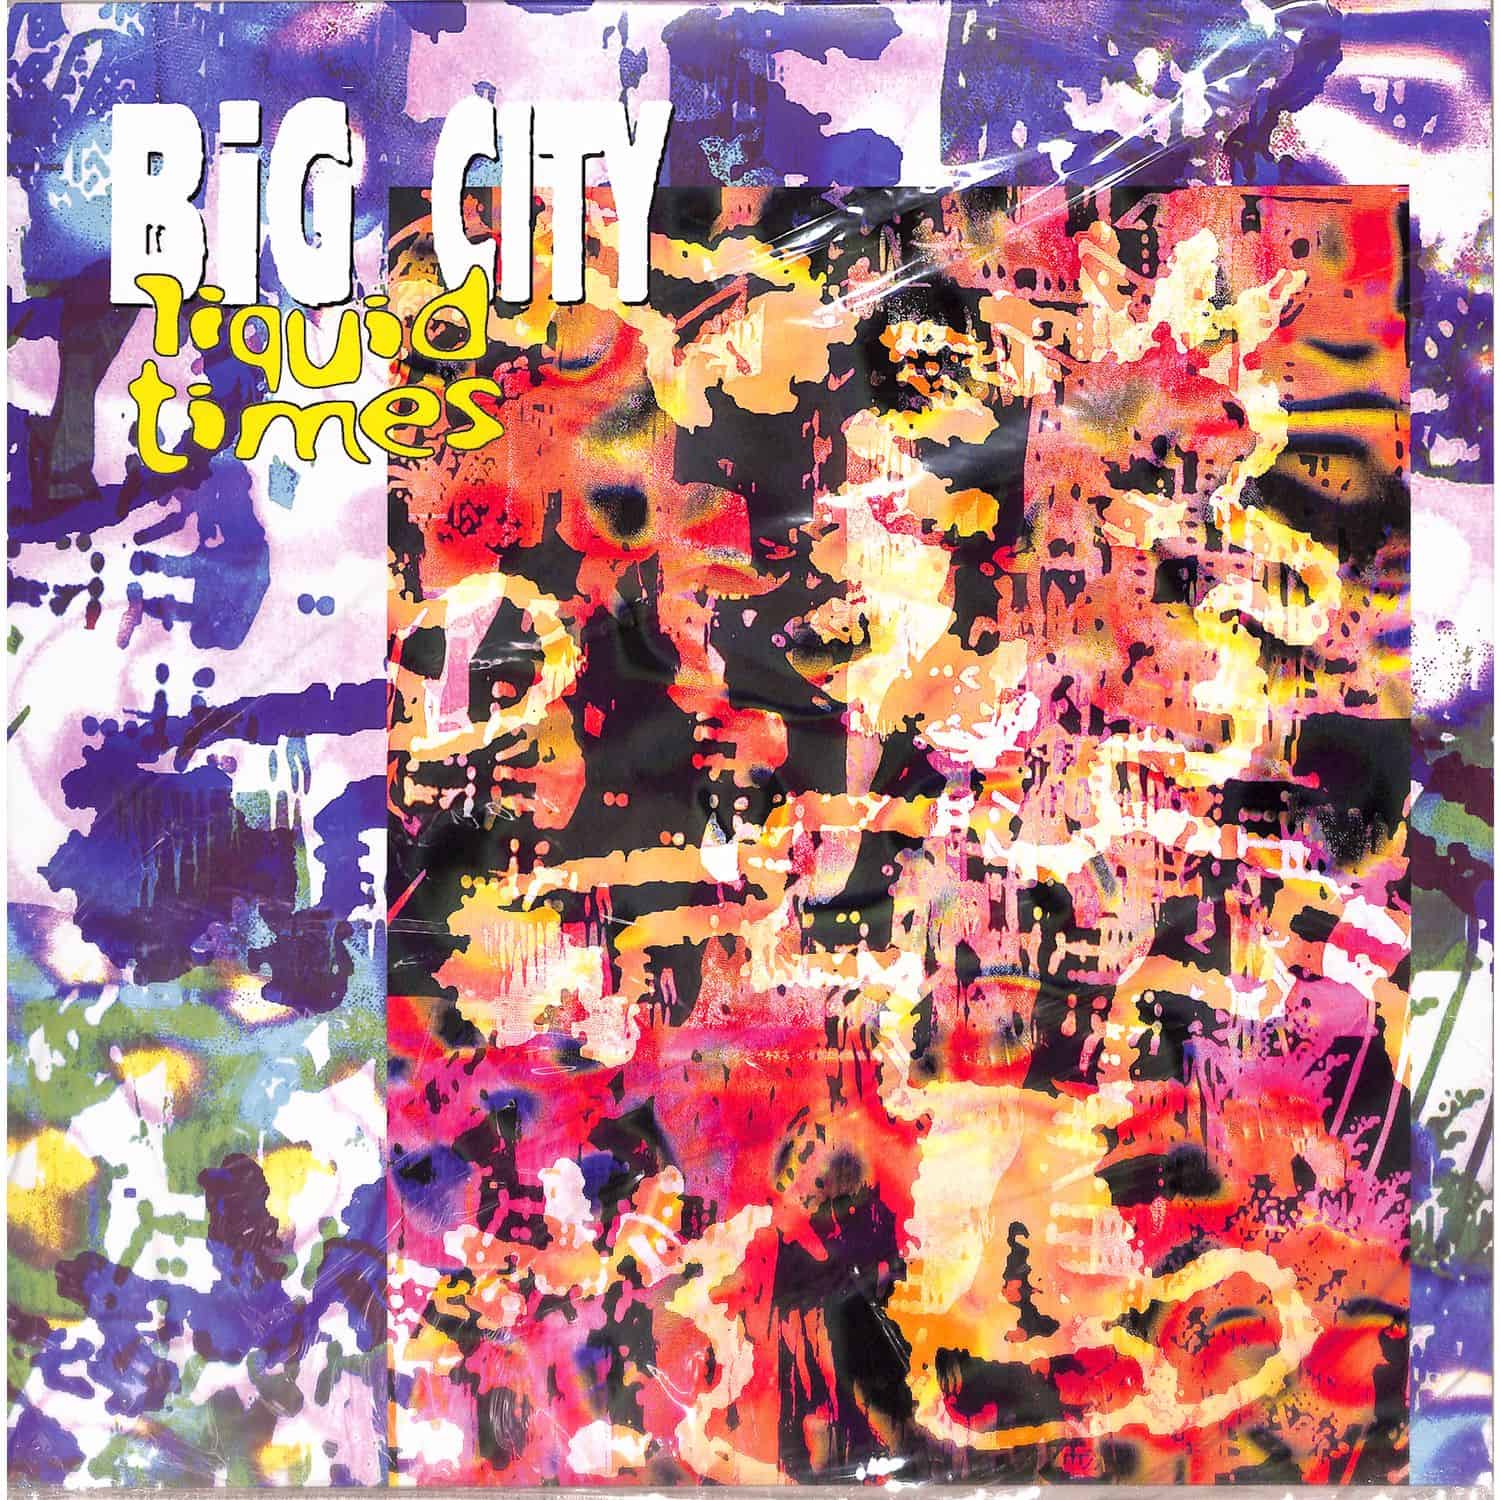 Big City - LIQUID TIMES EP